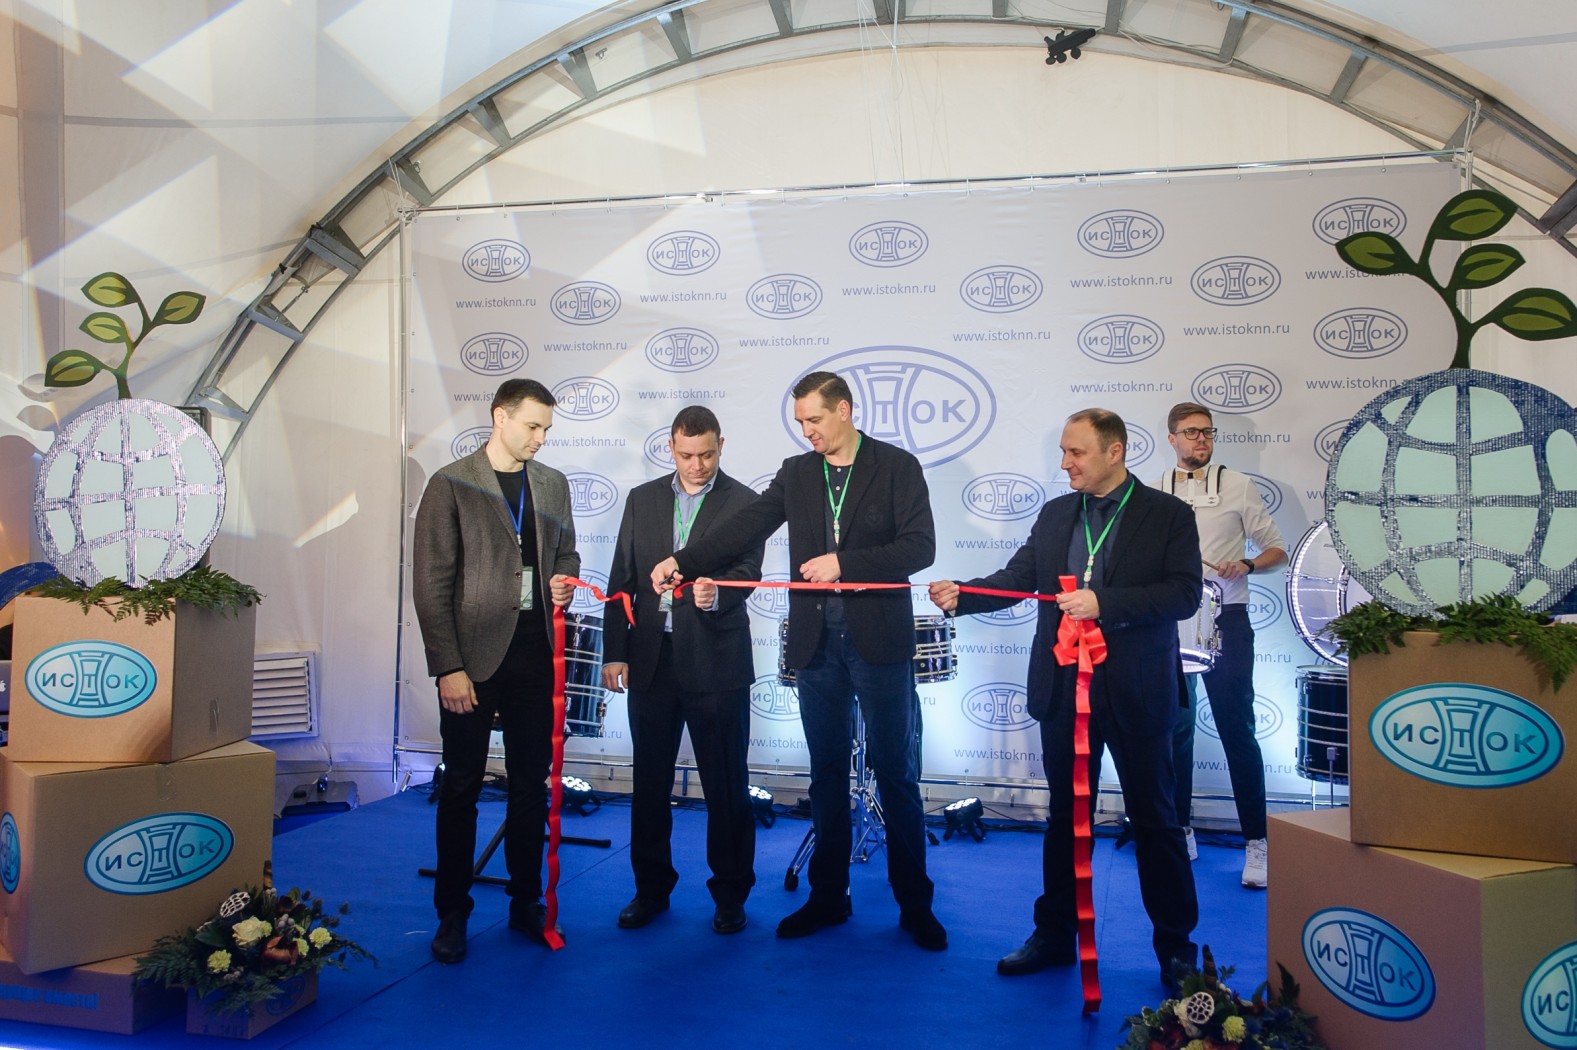 Открытие заготовительной площадки компании "Исток" в Нижнем Новгороде